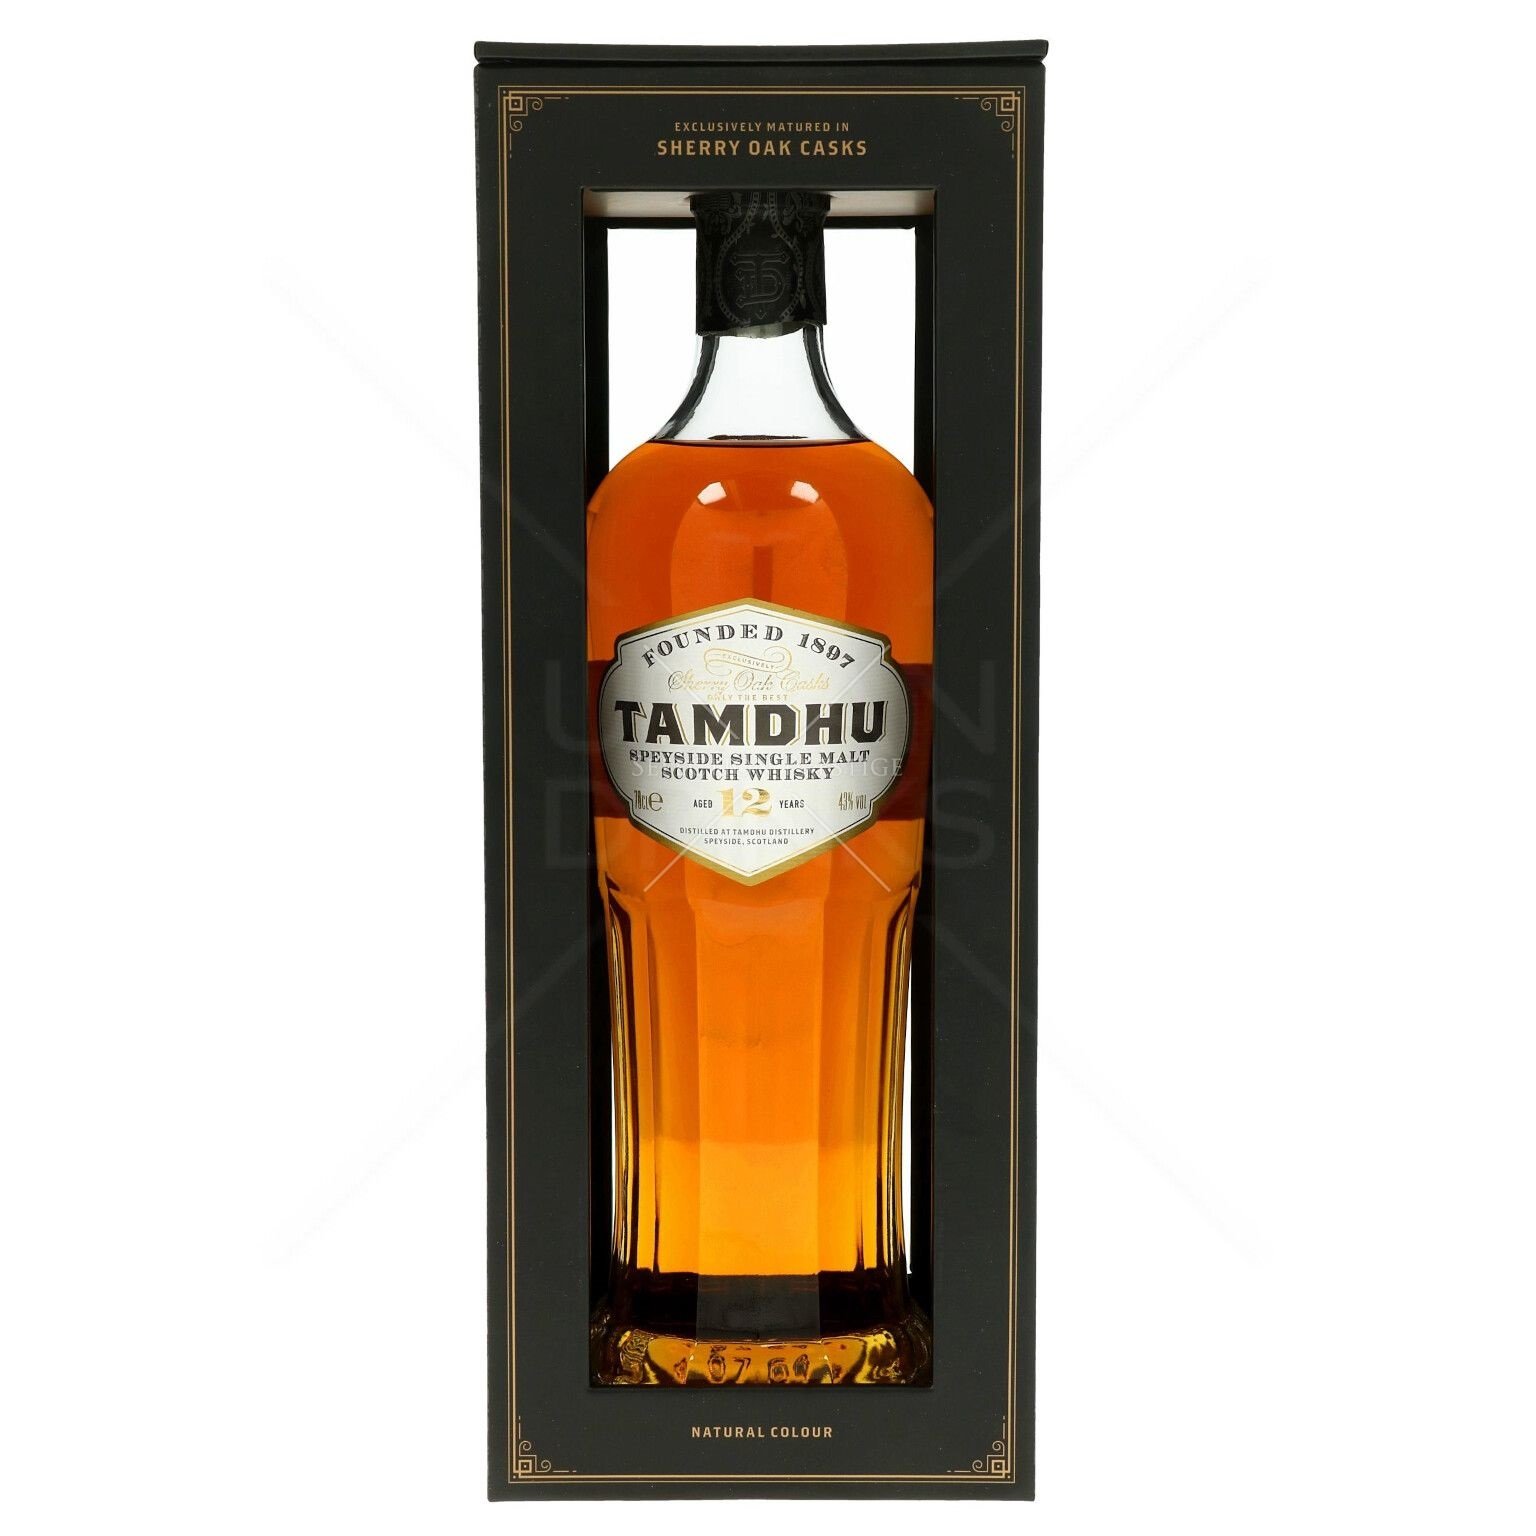 Виски Tamdhu Single Malt Scotch Whisky 12 лет, в подарочной упаковке, 43%, 0,7 л - фото 1